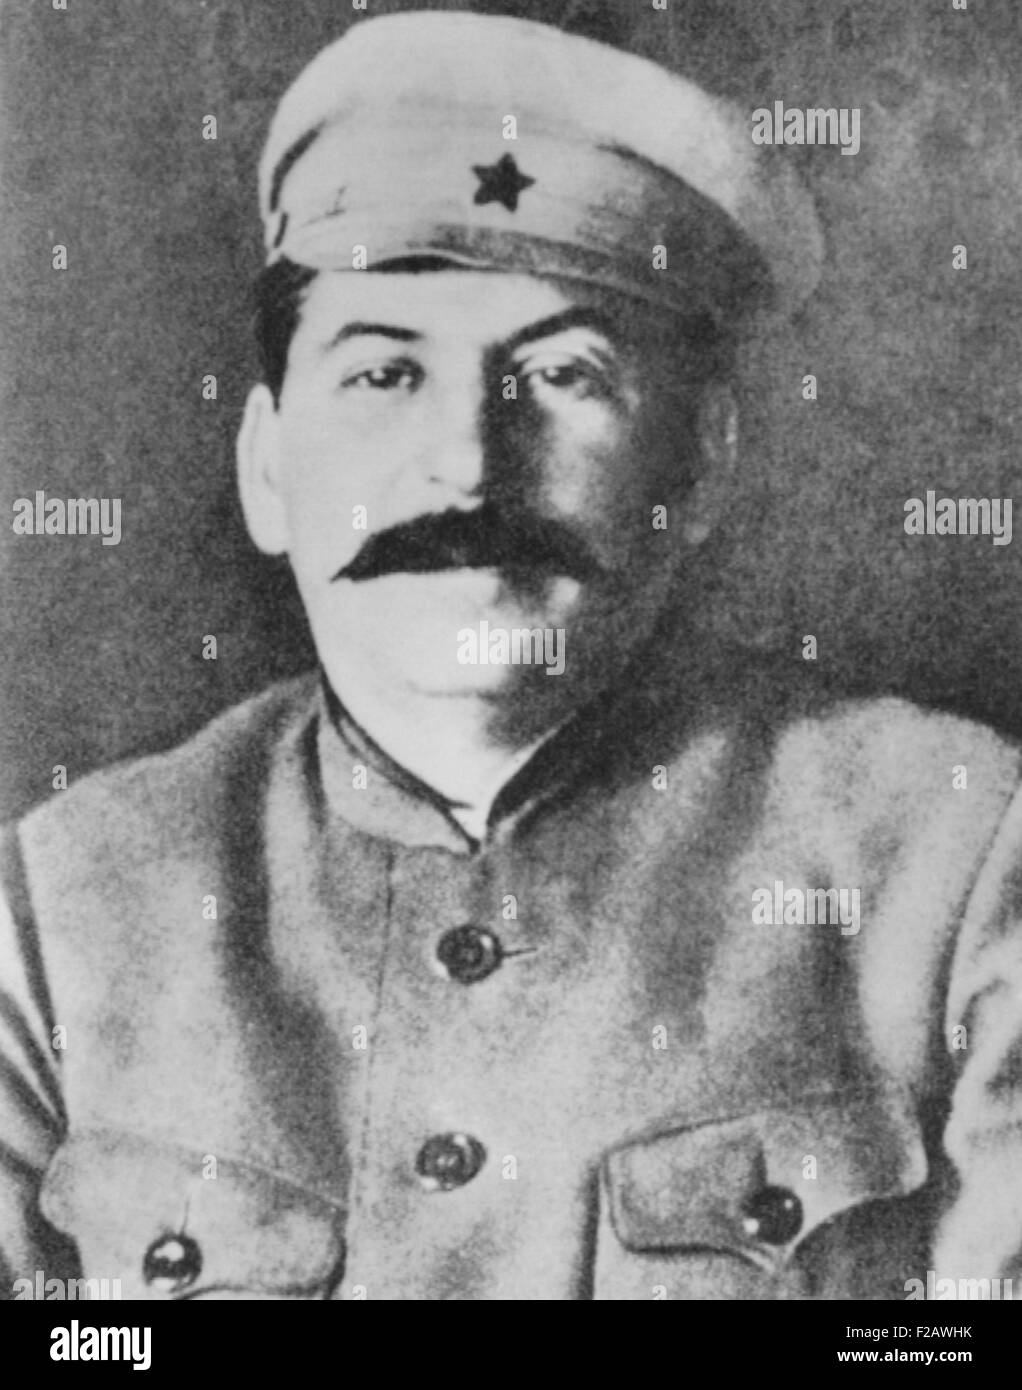 Josef Staline dans l'uniforme de l'Armée Rouge, ca. 1920. CSU (2015   1371 11) Banque D'Images